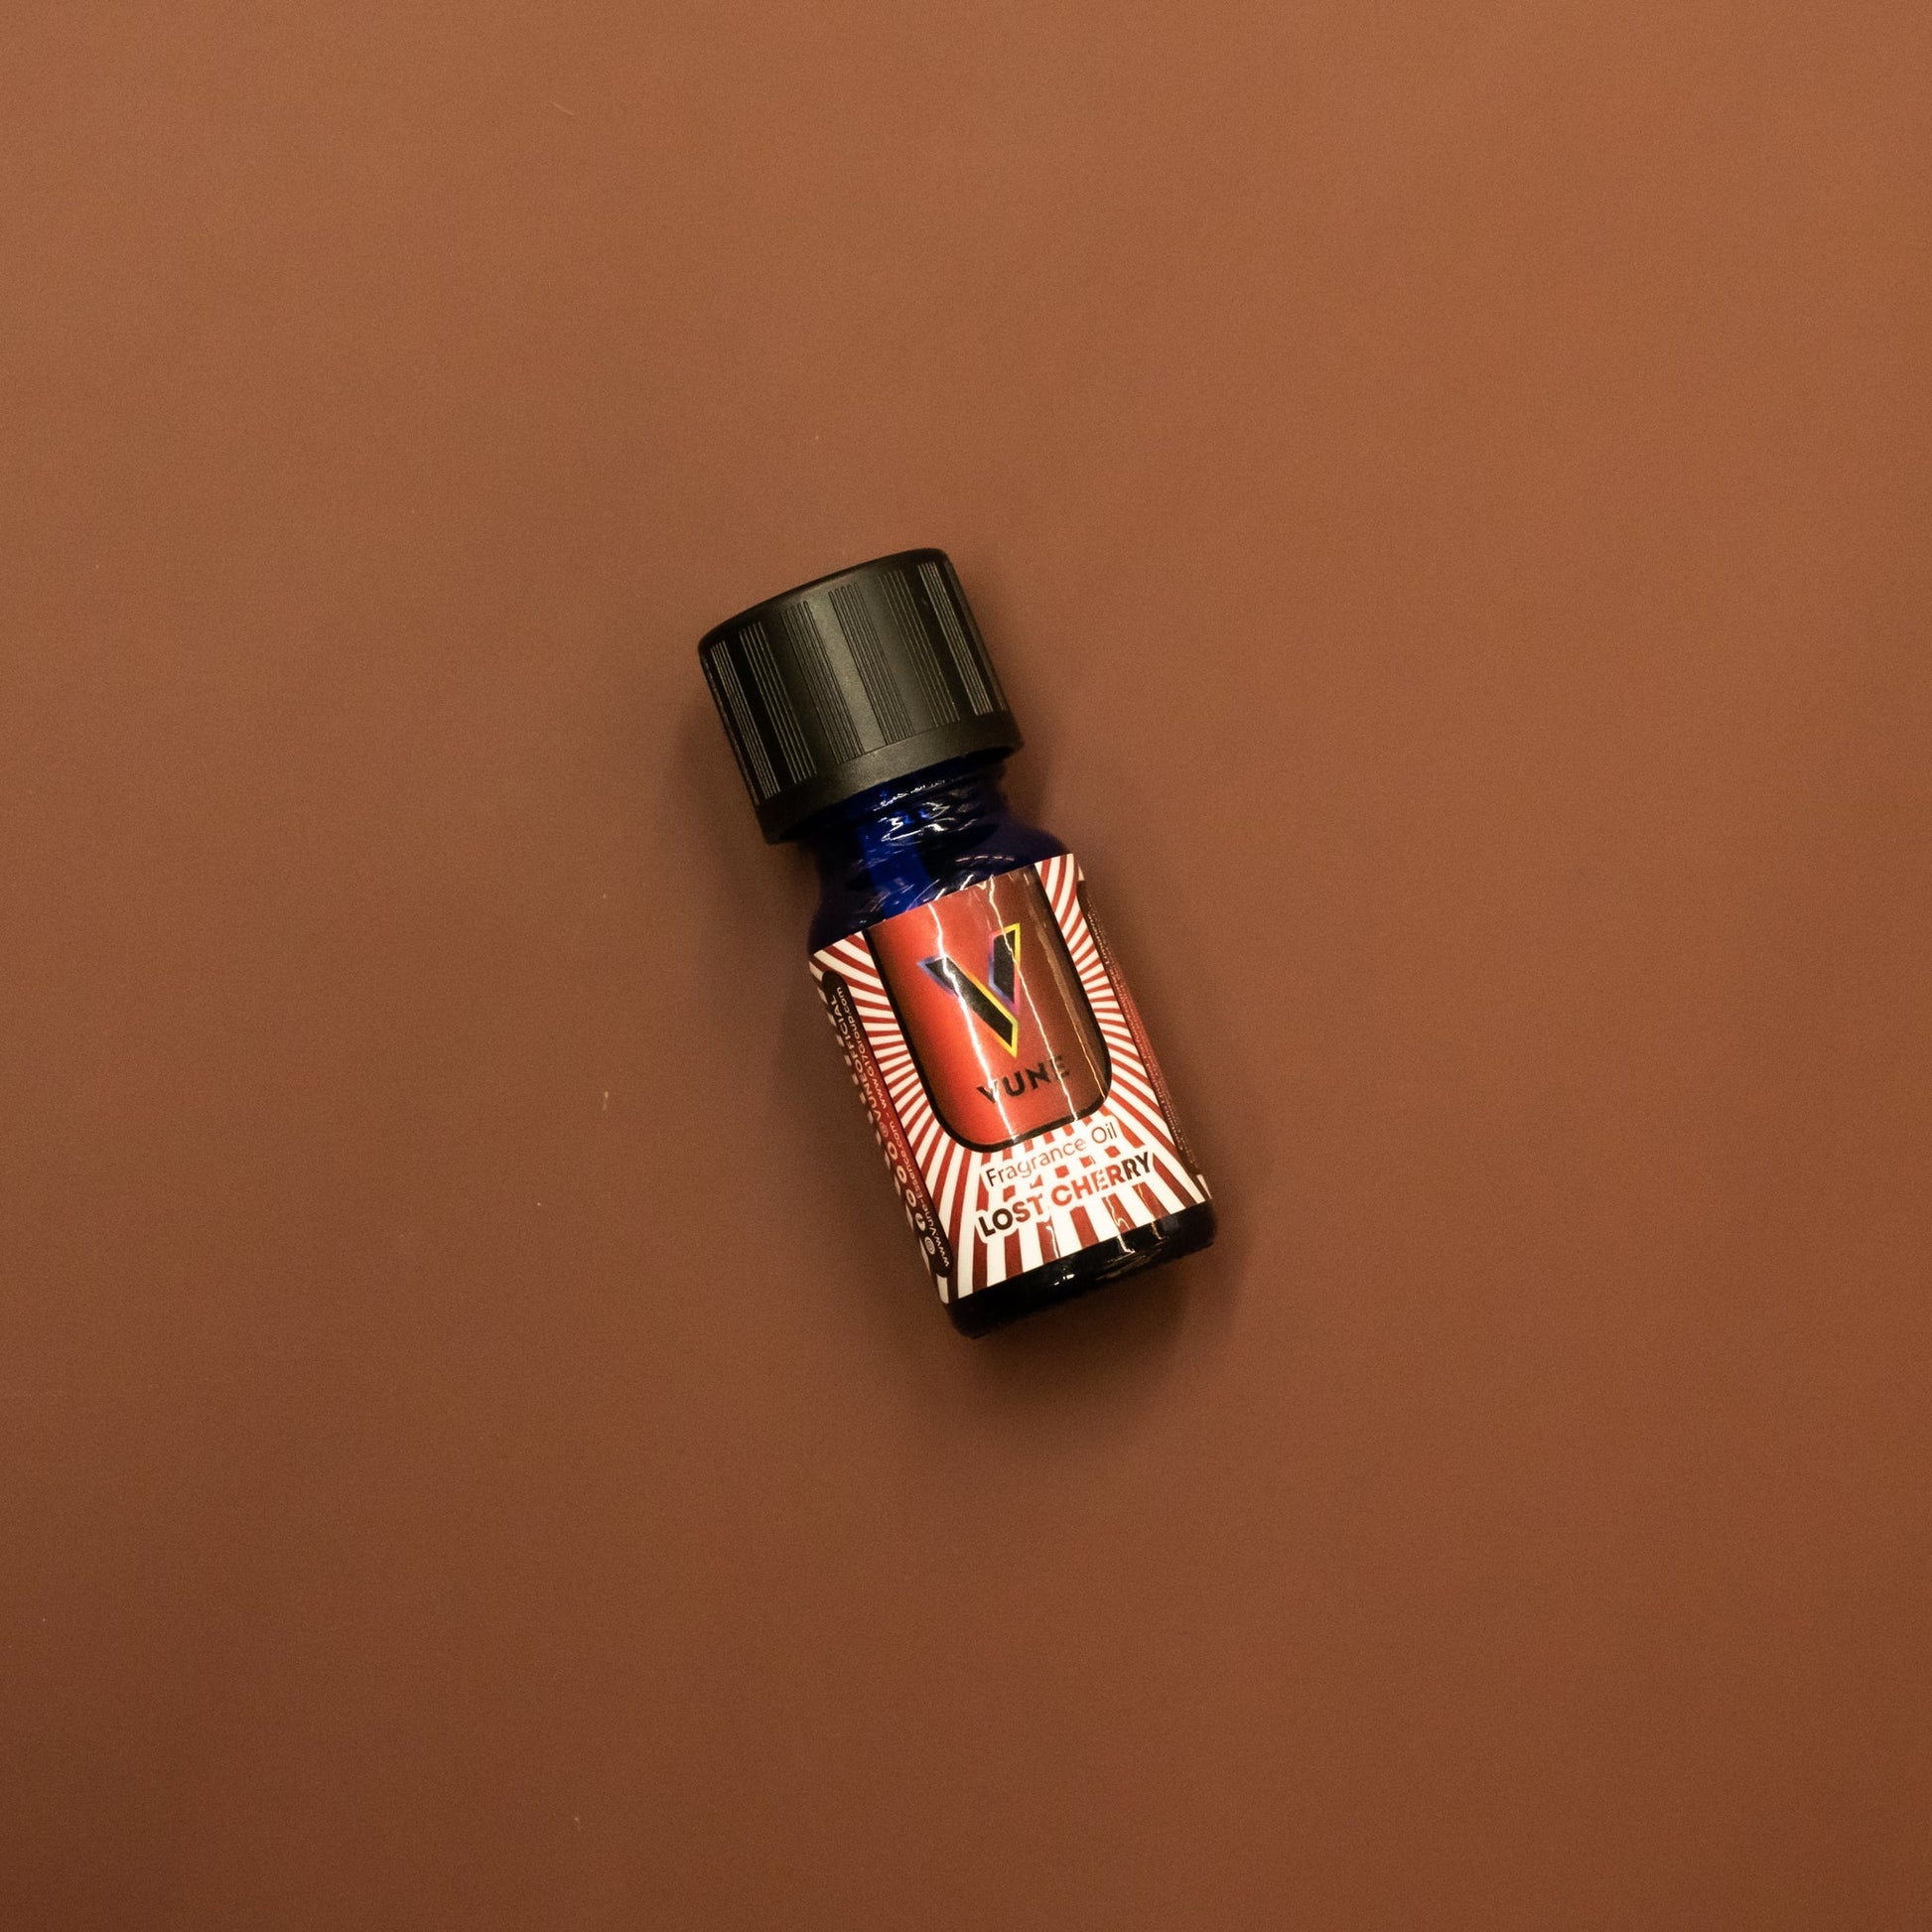 Vune Chromatic Noir Opium Fragrance Oil - Vune Essence